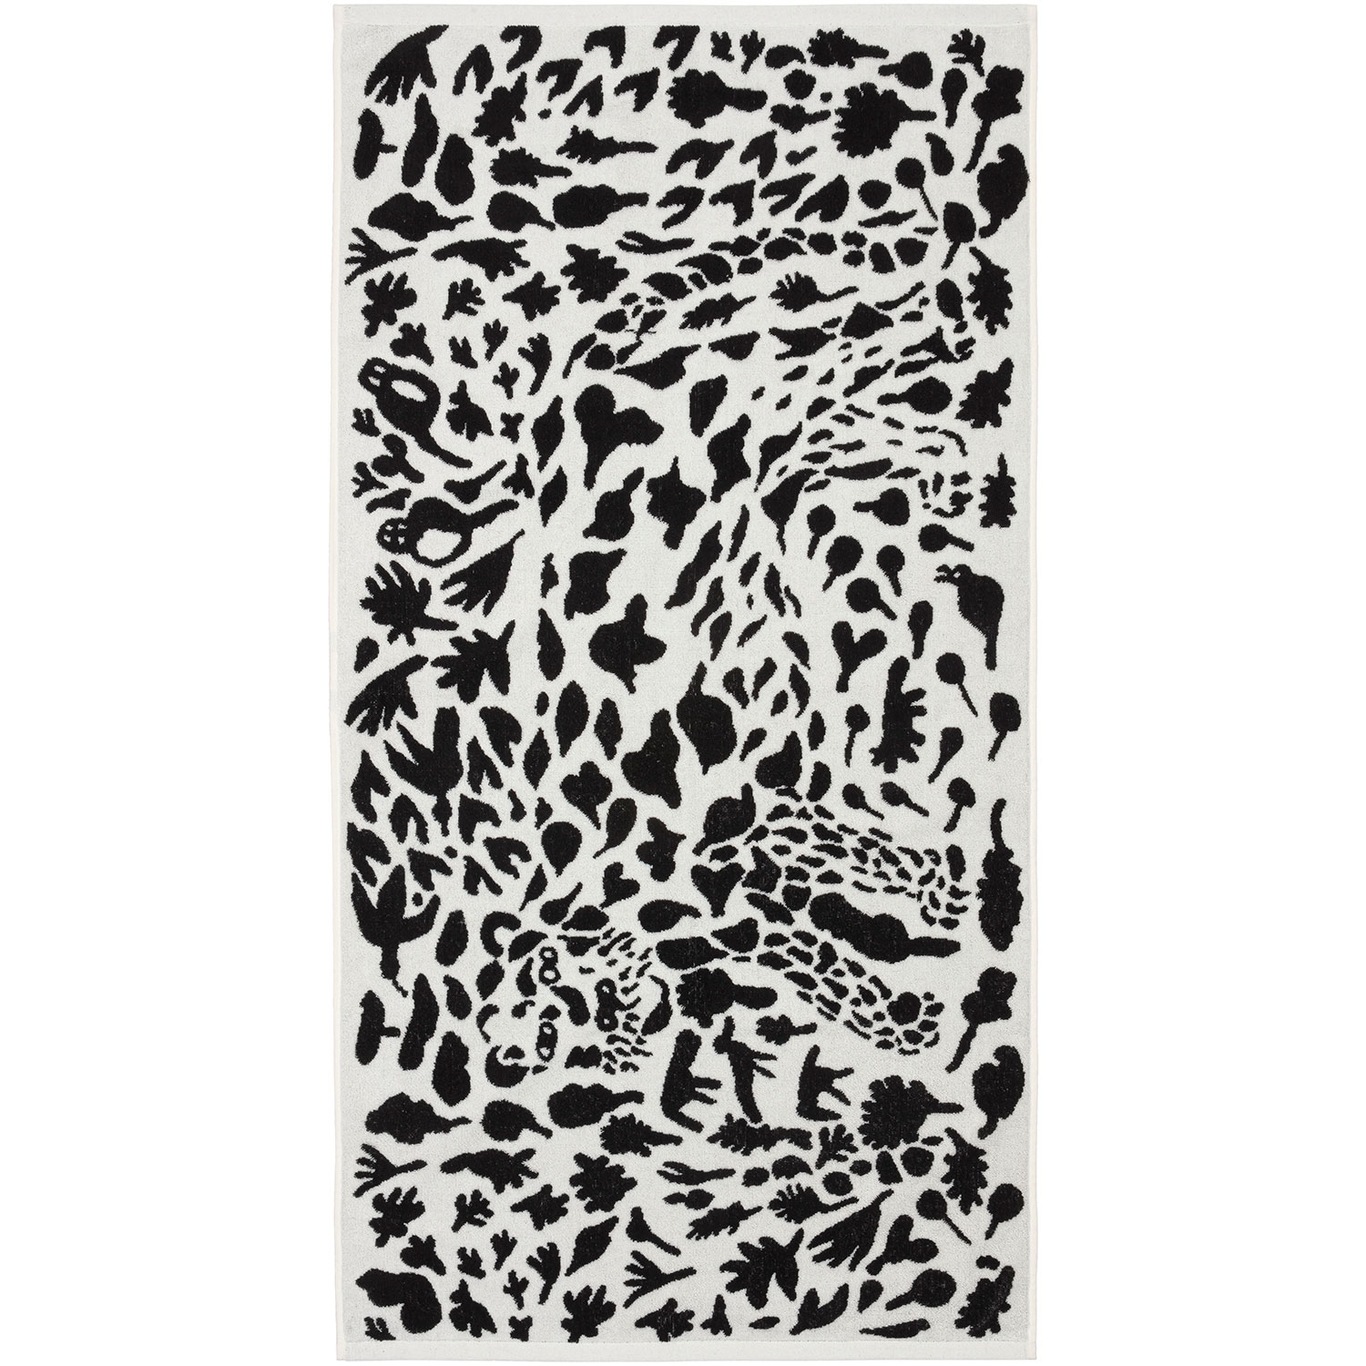 Oiva Toikka Collection Towel, 70x140 cm, Cheetah